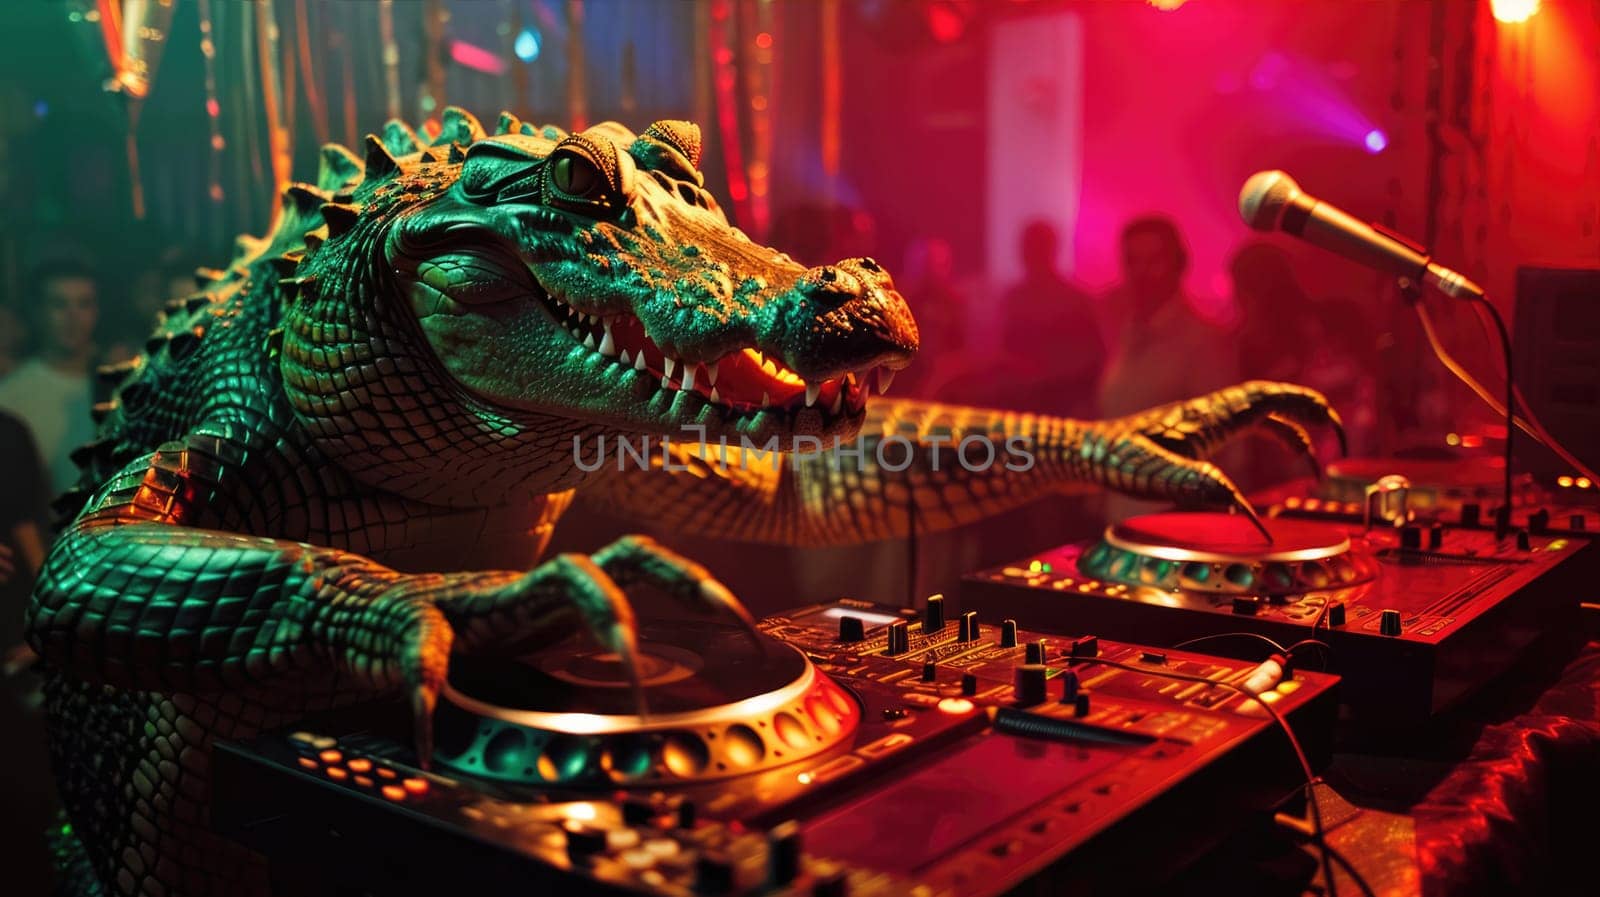 Alligator DJ Crocodile at a party in night club AI